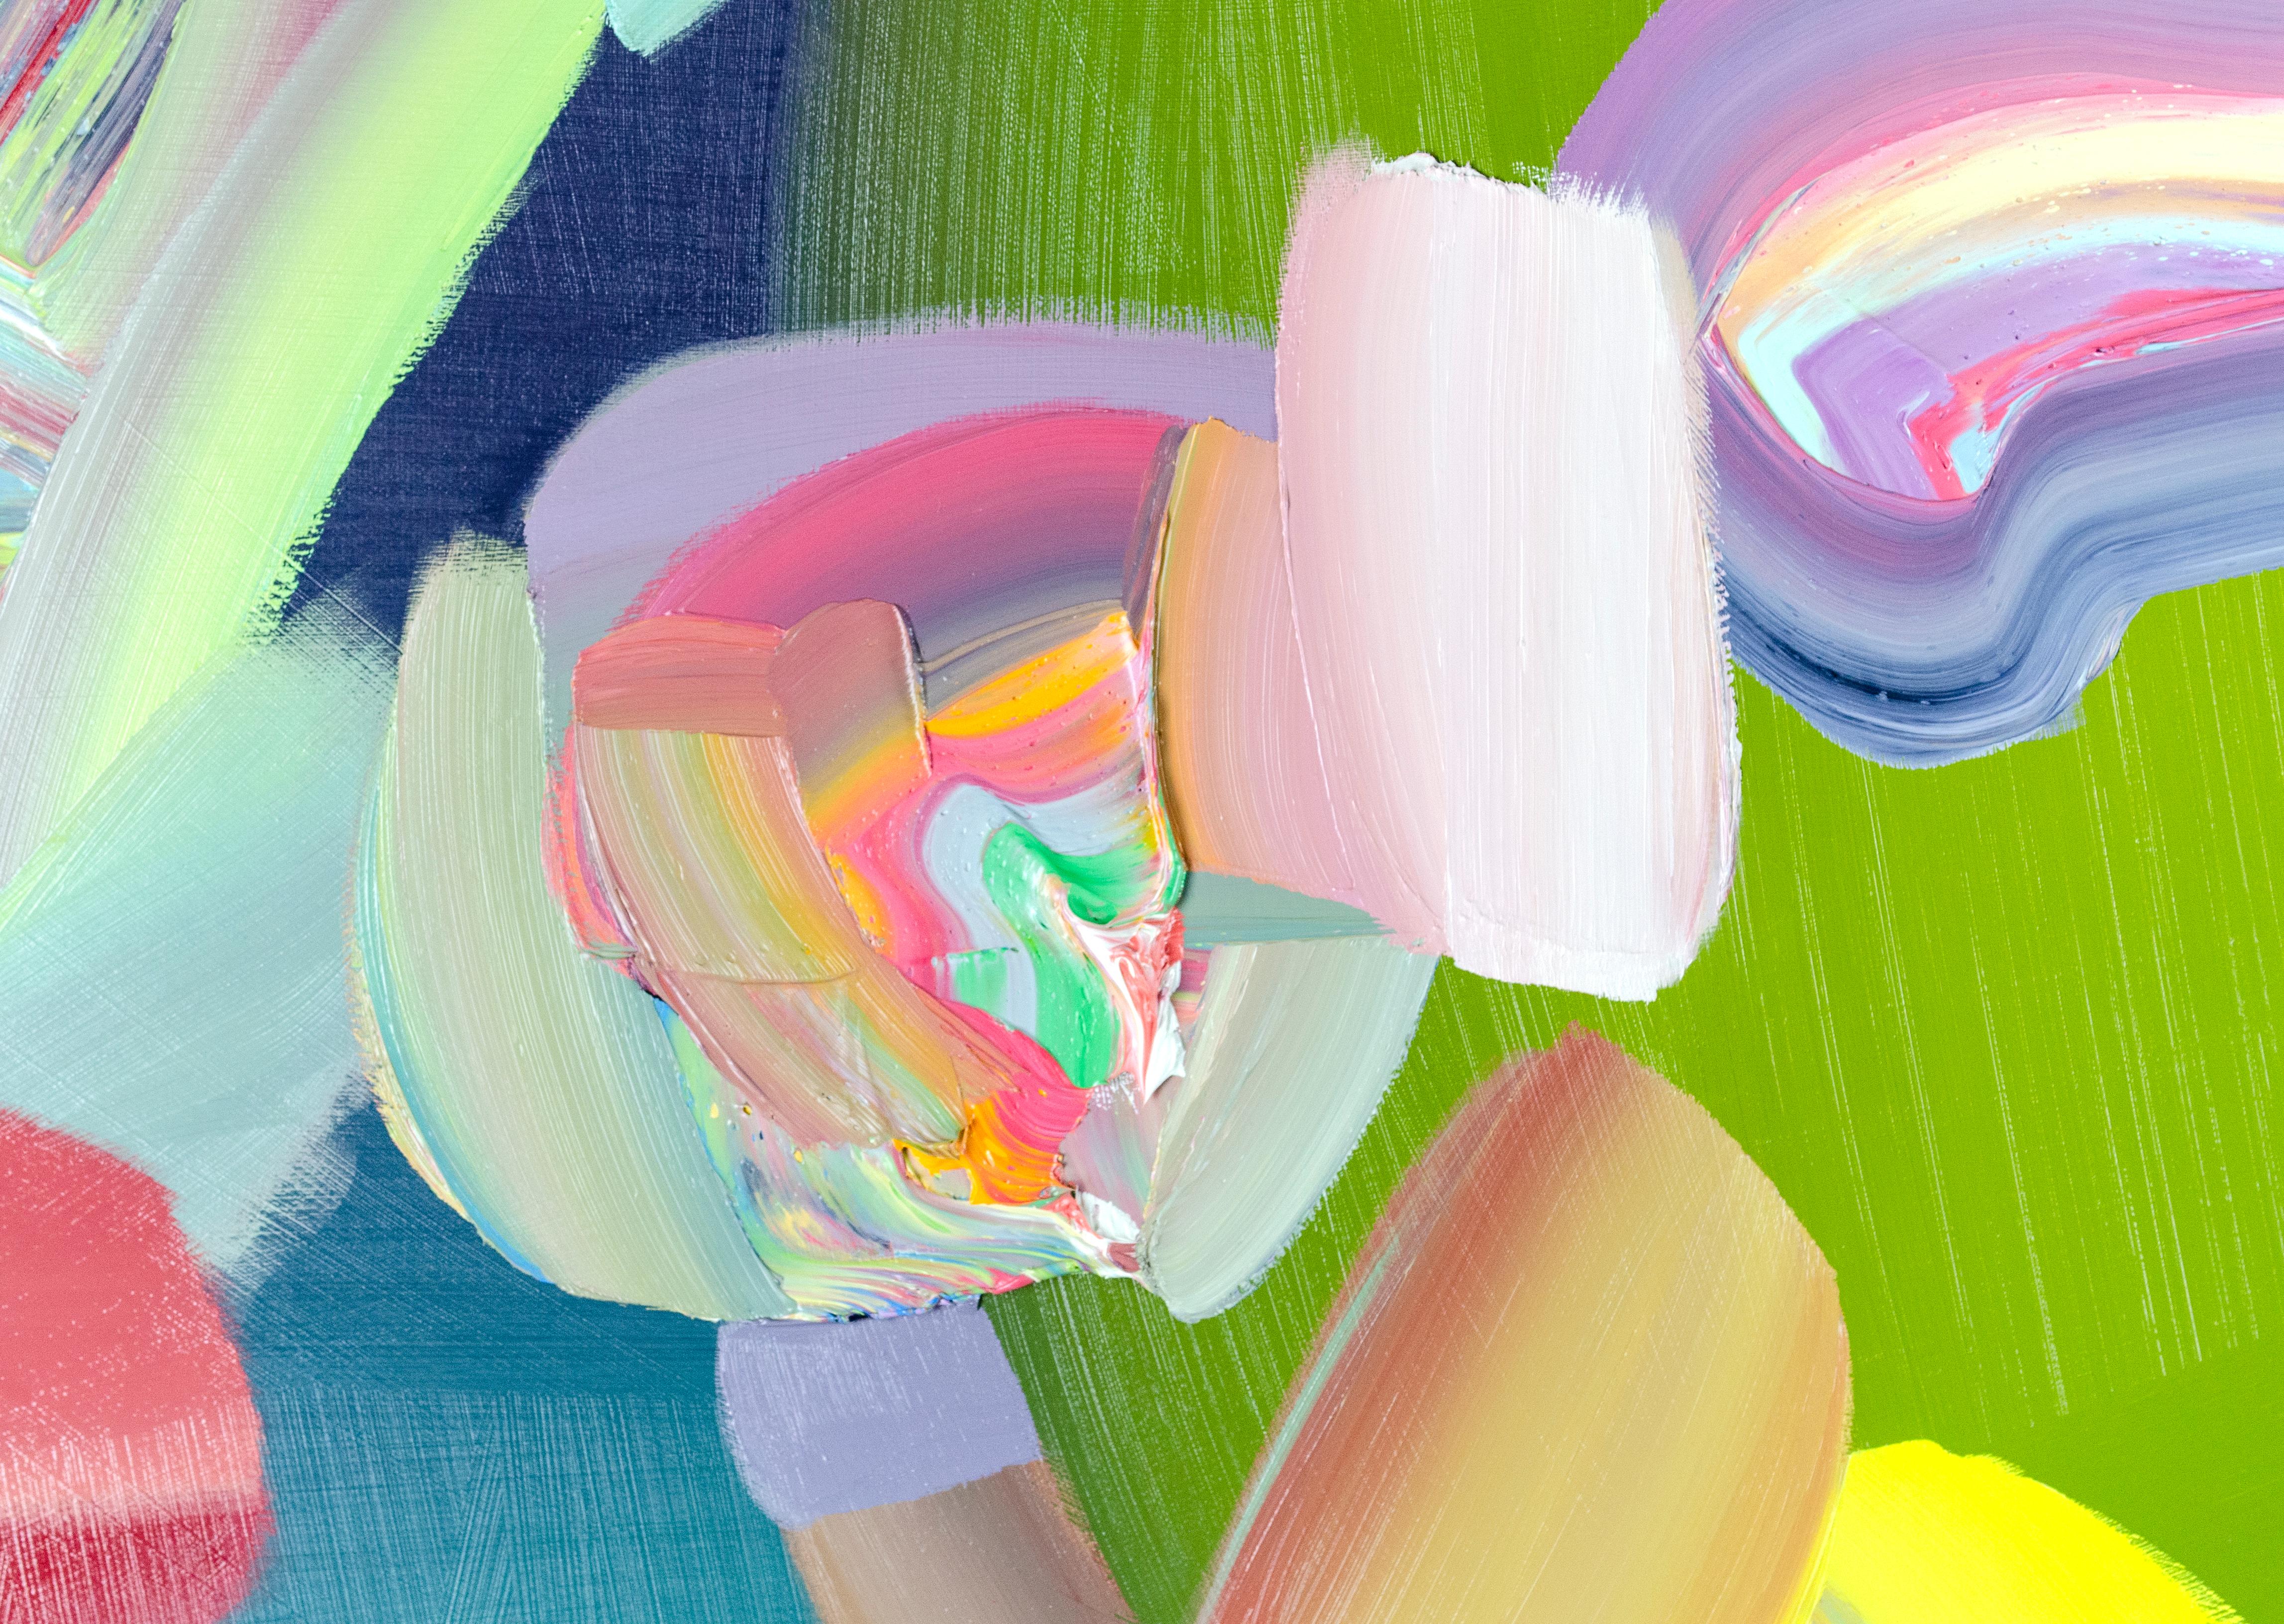 En abandonnant l'imagerie figurative et en se penchant sur l'abstraction, l'artiste texan Trey Egan se délecte des propriétés pures de la peinture. Présentant un large éventail de teintes et des variations de surface allant du lisse au gluant, ses